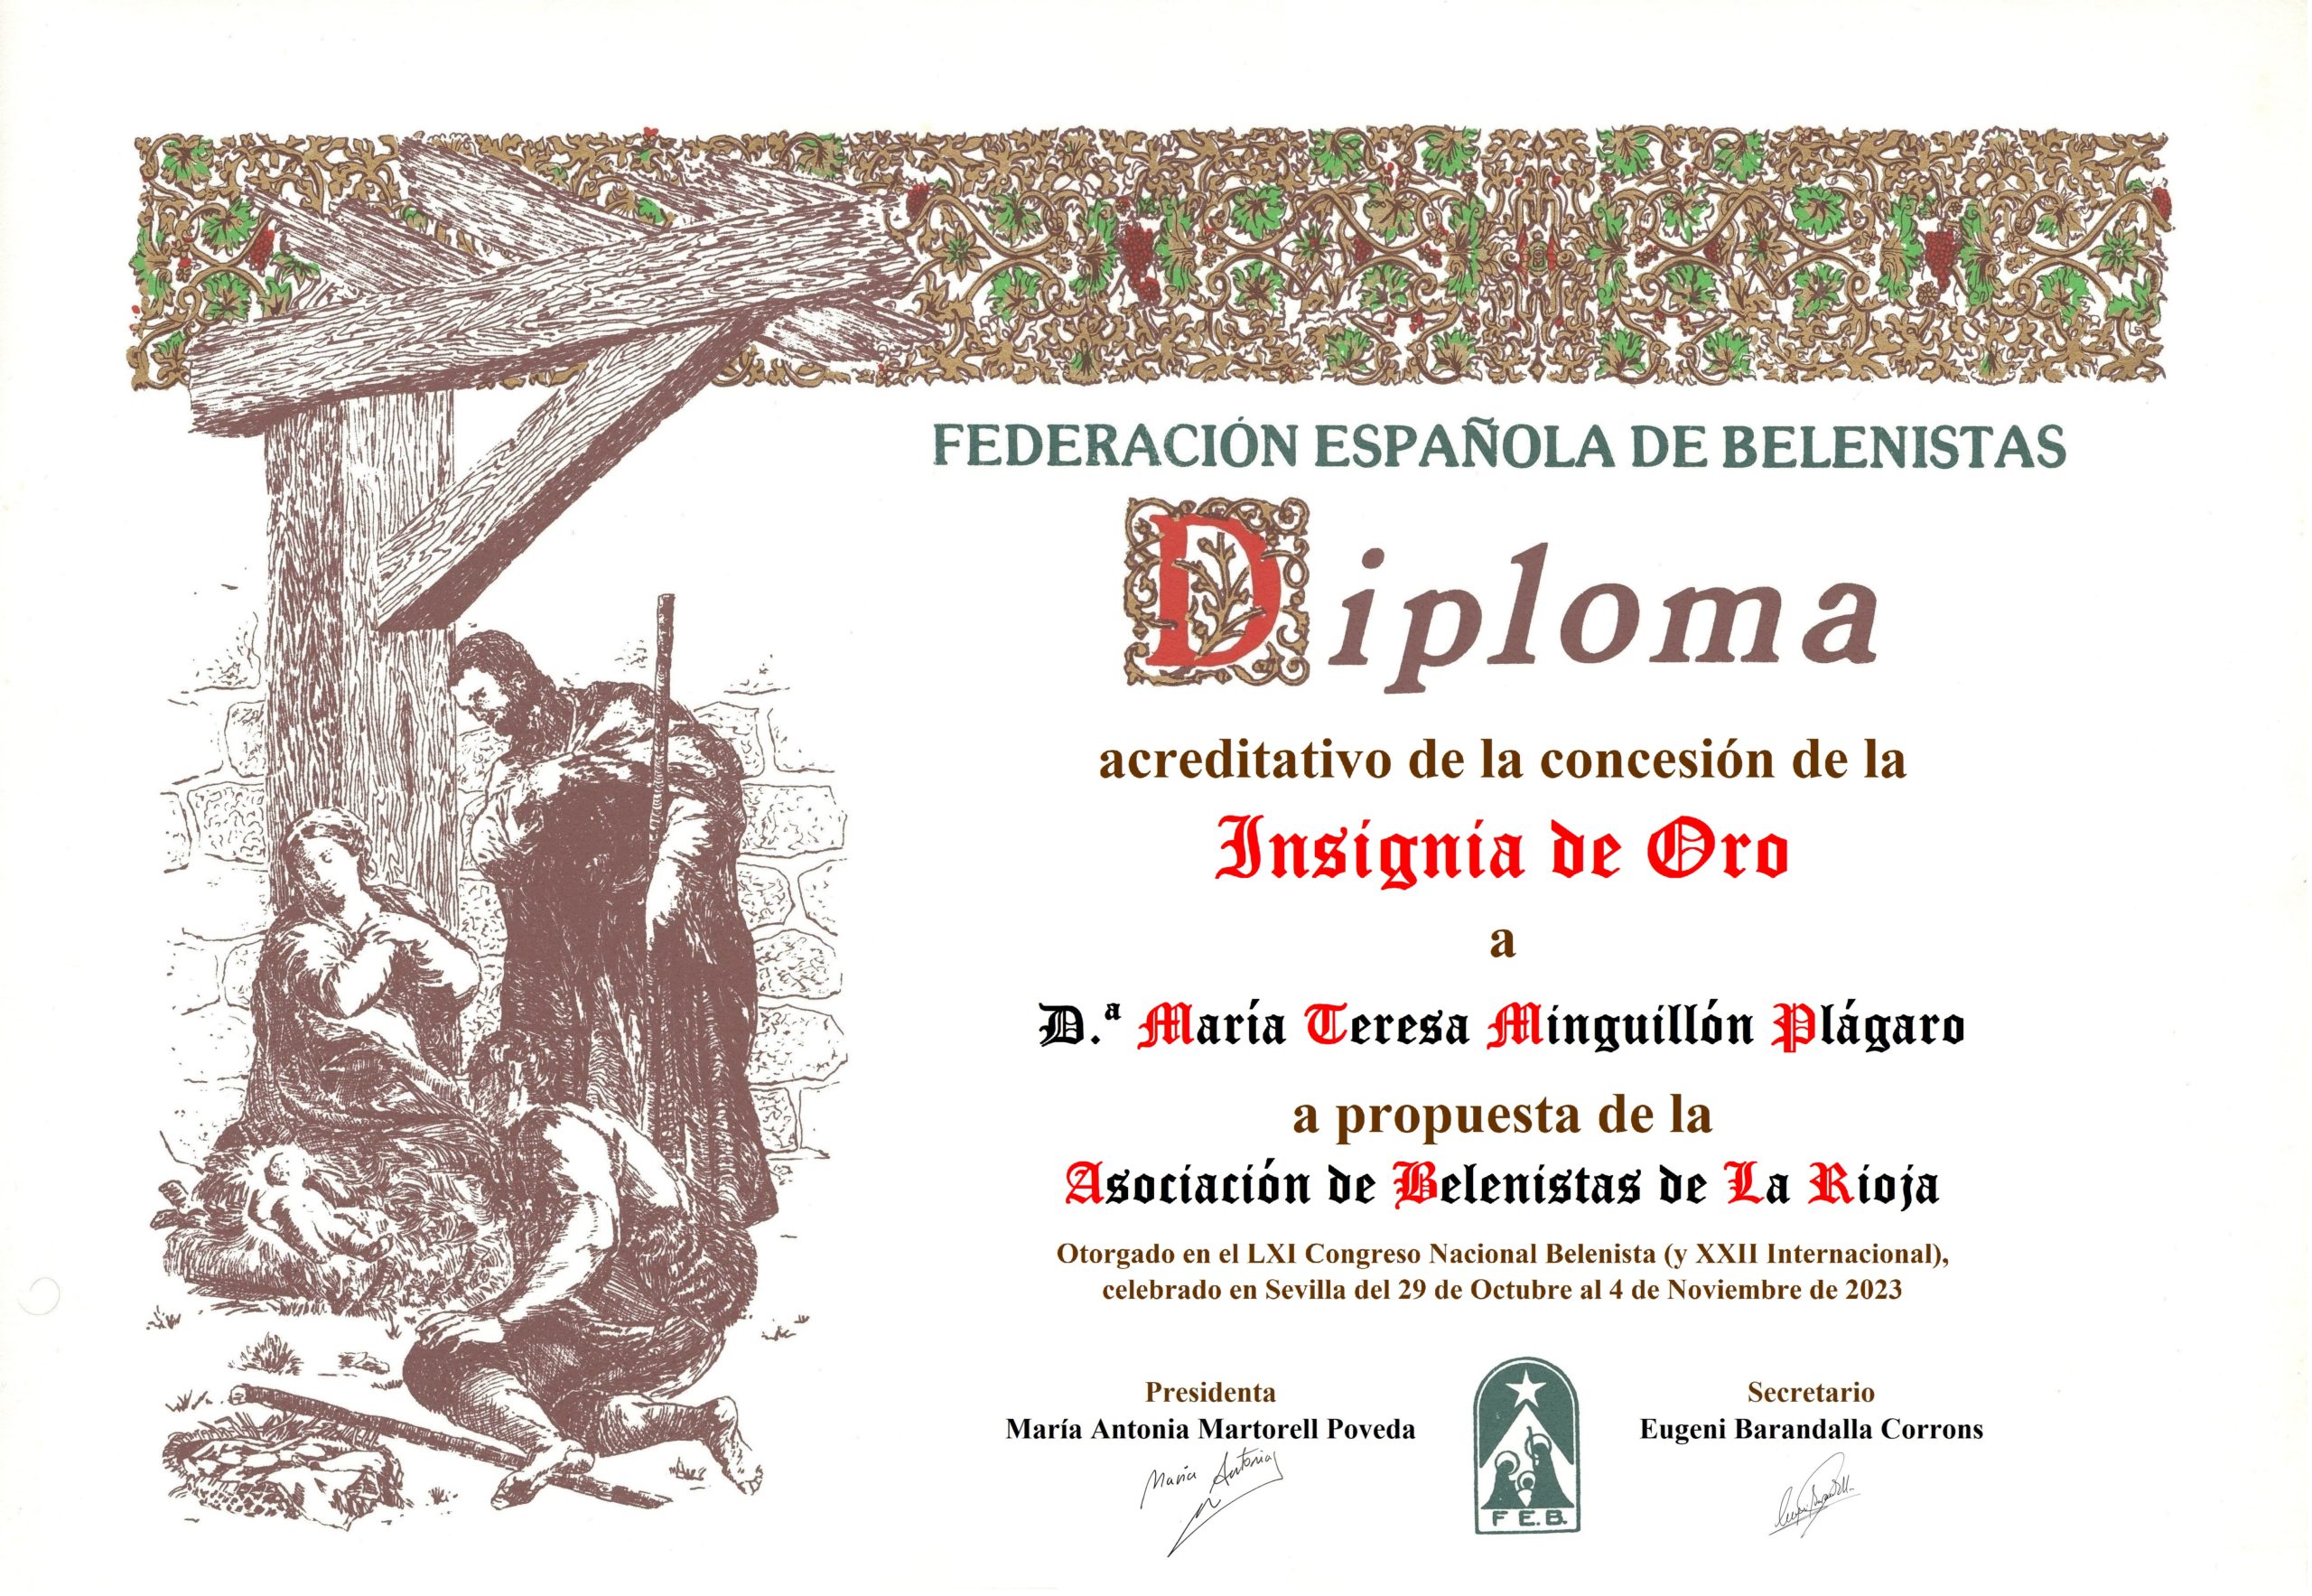 María Teresa Minguillón Plágaro - Título/Diploma Insignia de Oro FEB 2023